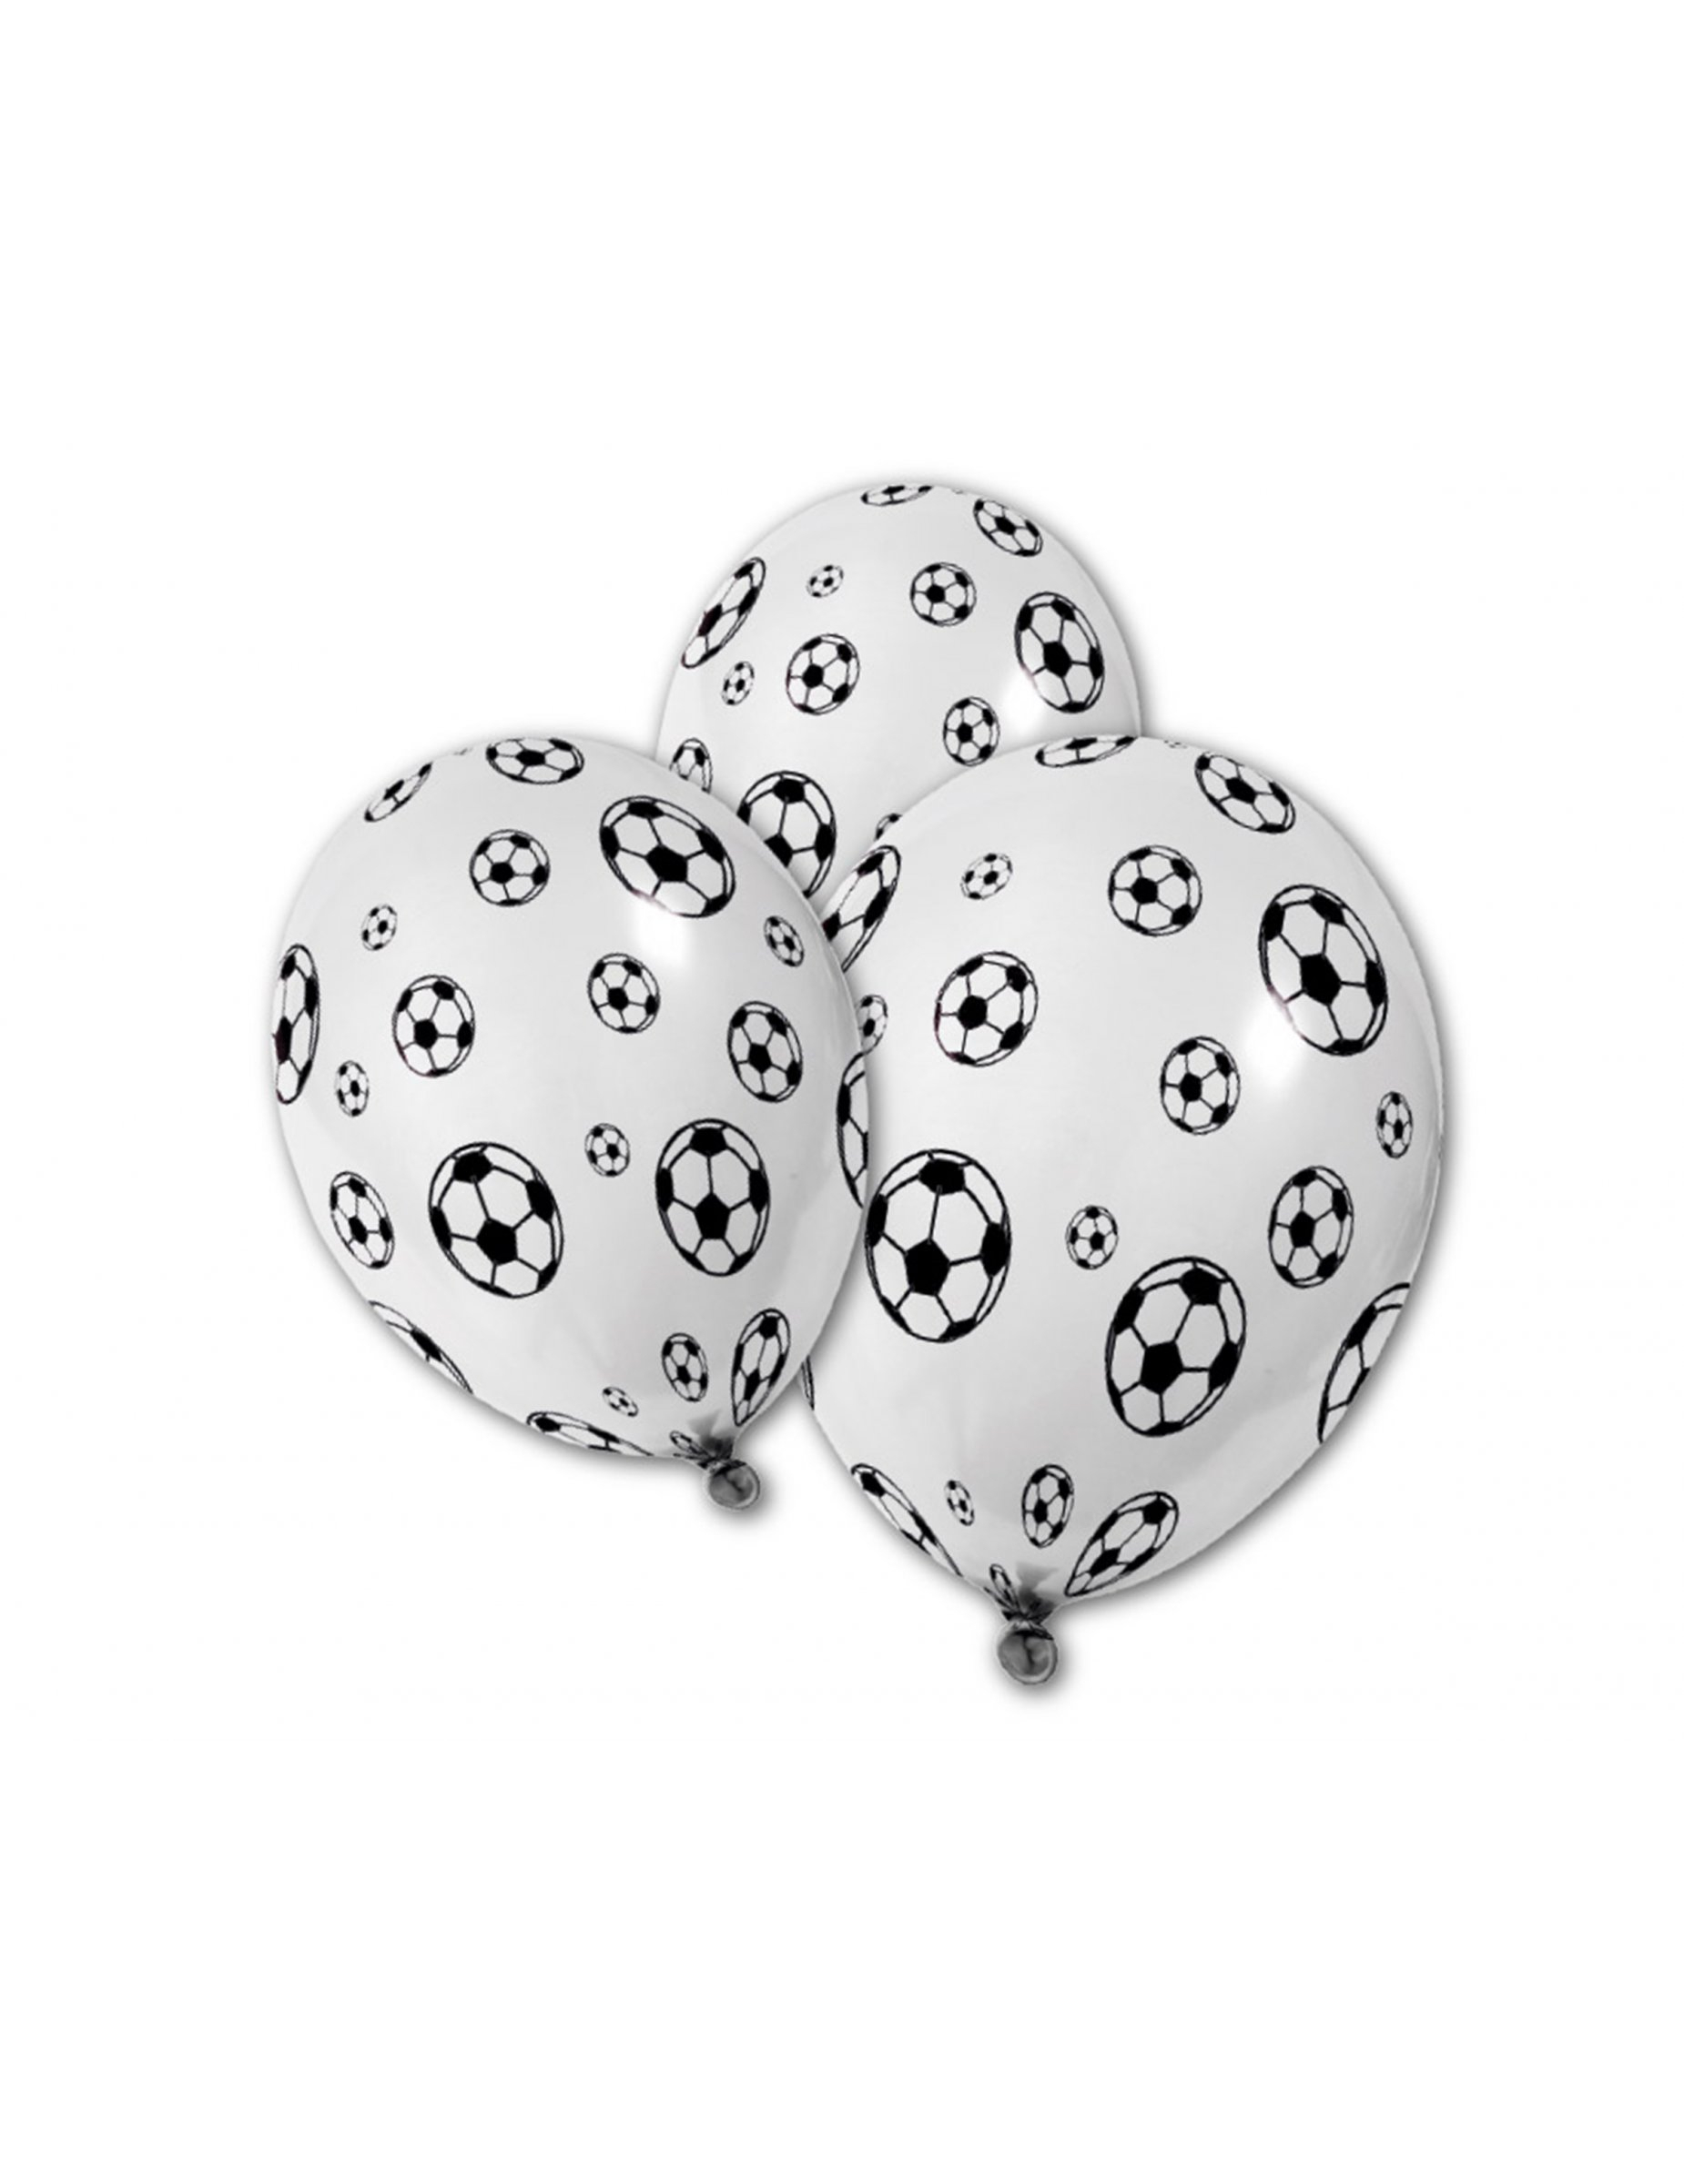 Fussball-Luftballons 5 Stück weiss-schwarz 36x30cm von HOBI